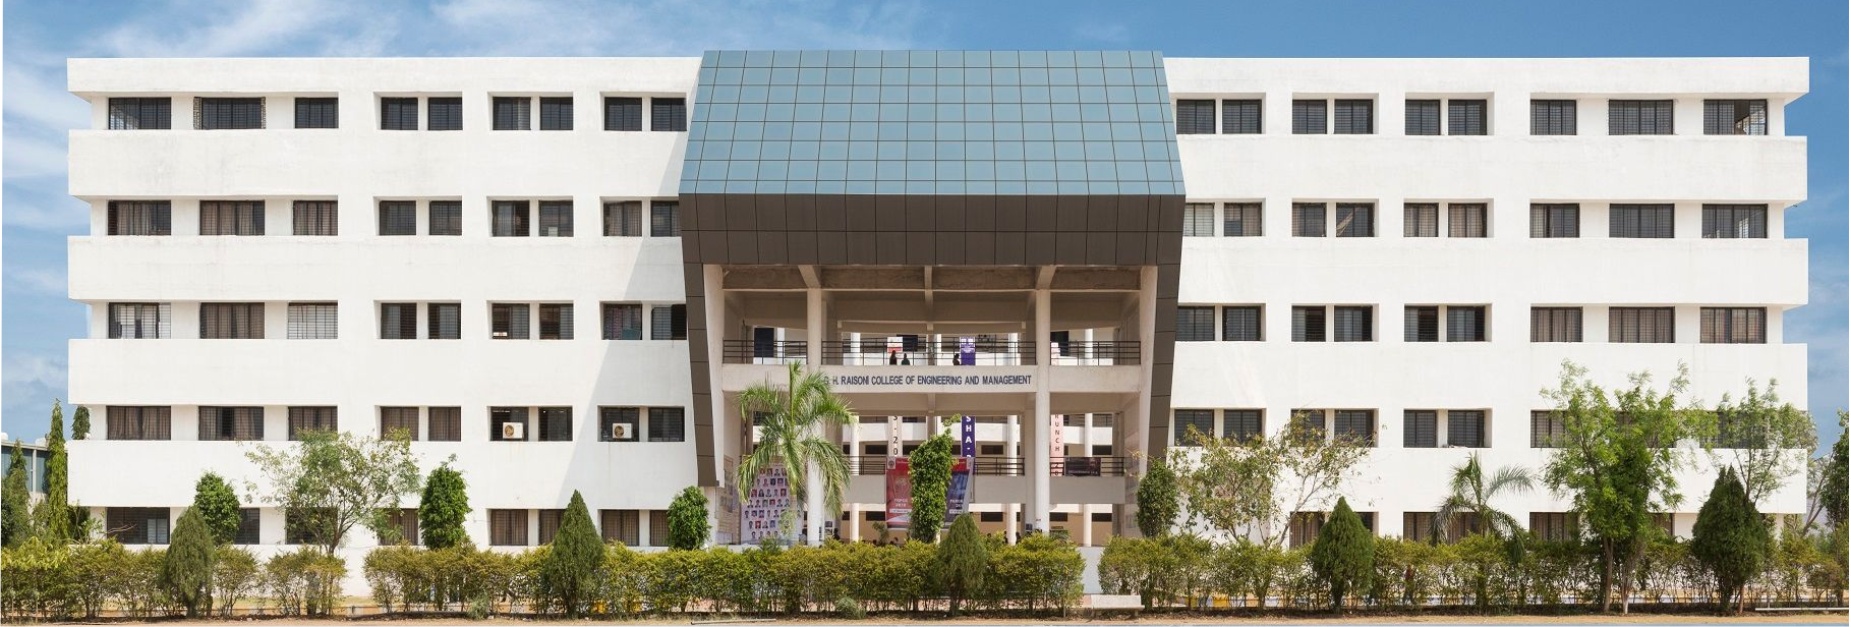 G. H. Raisoni University ( Amravati )